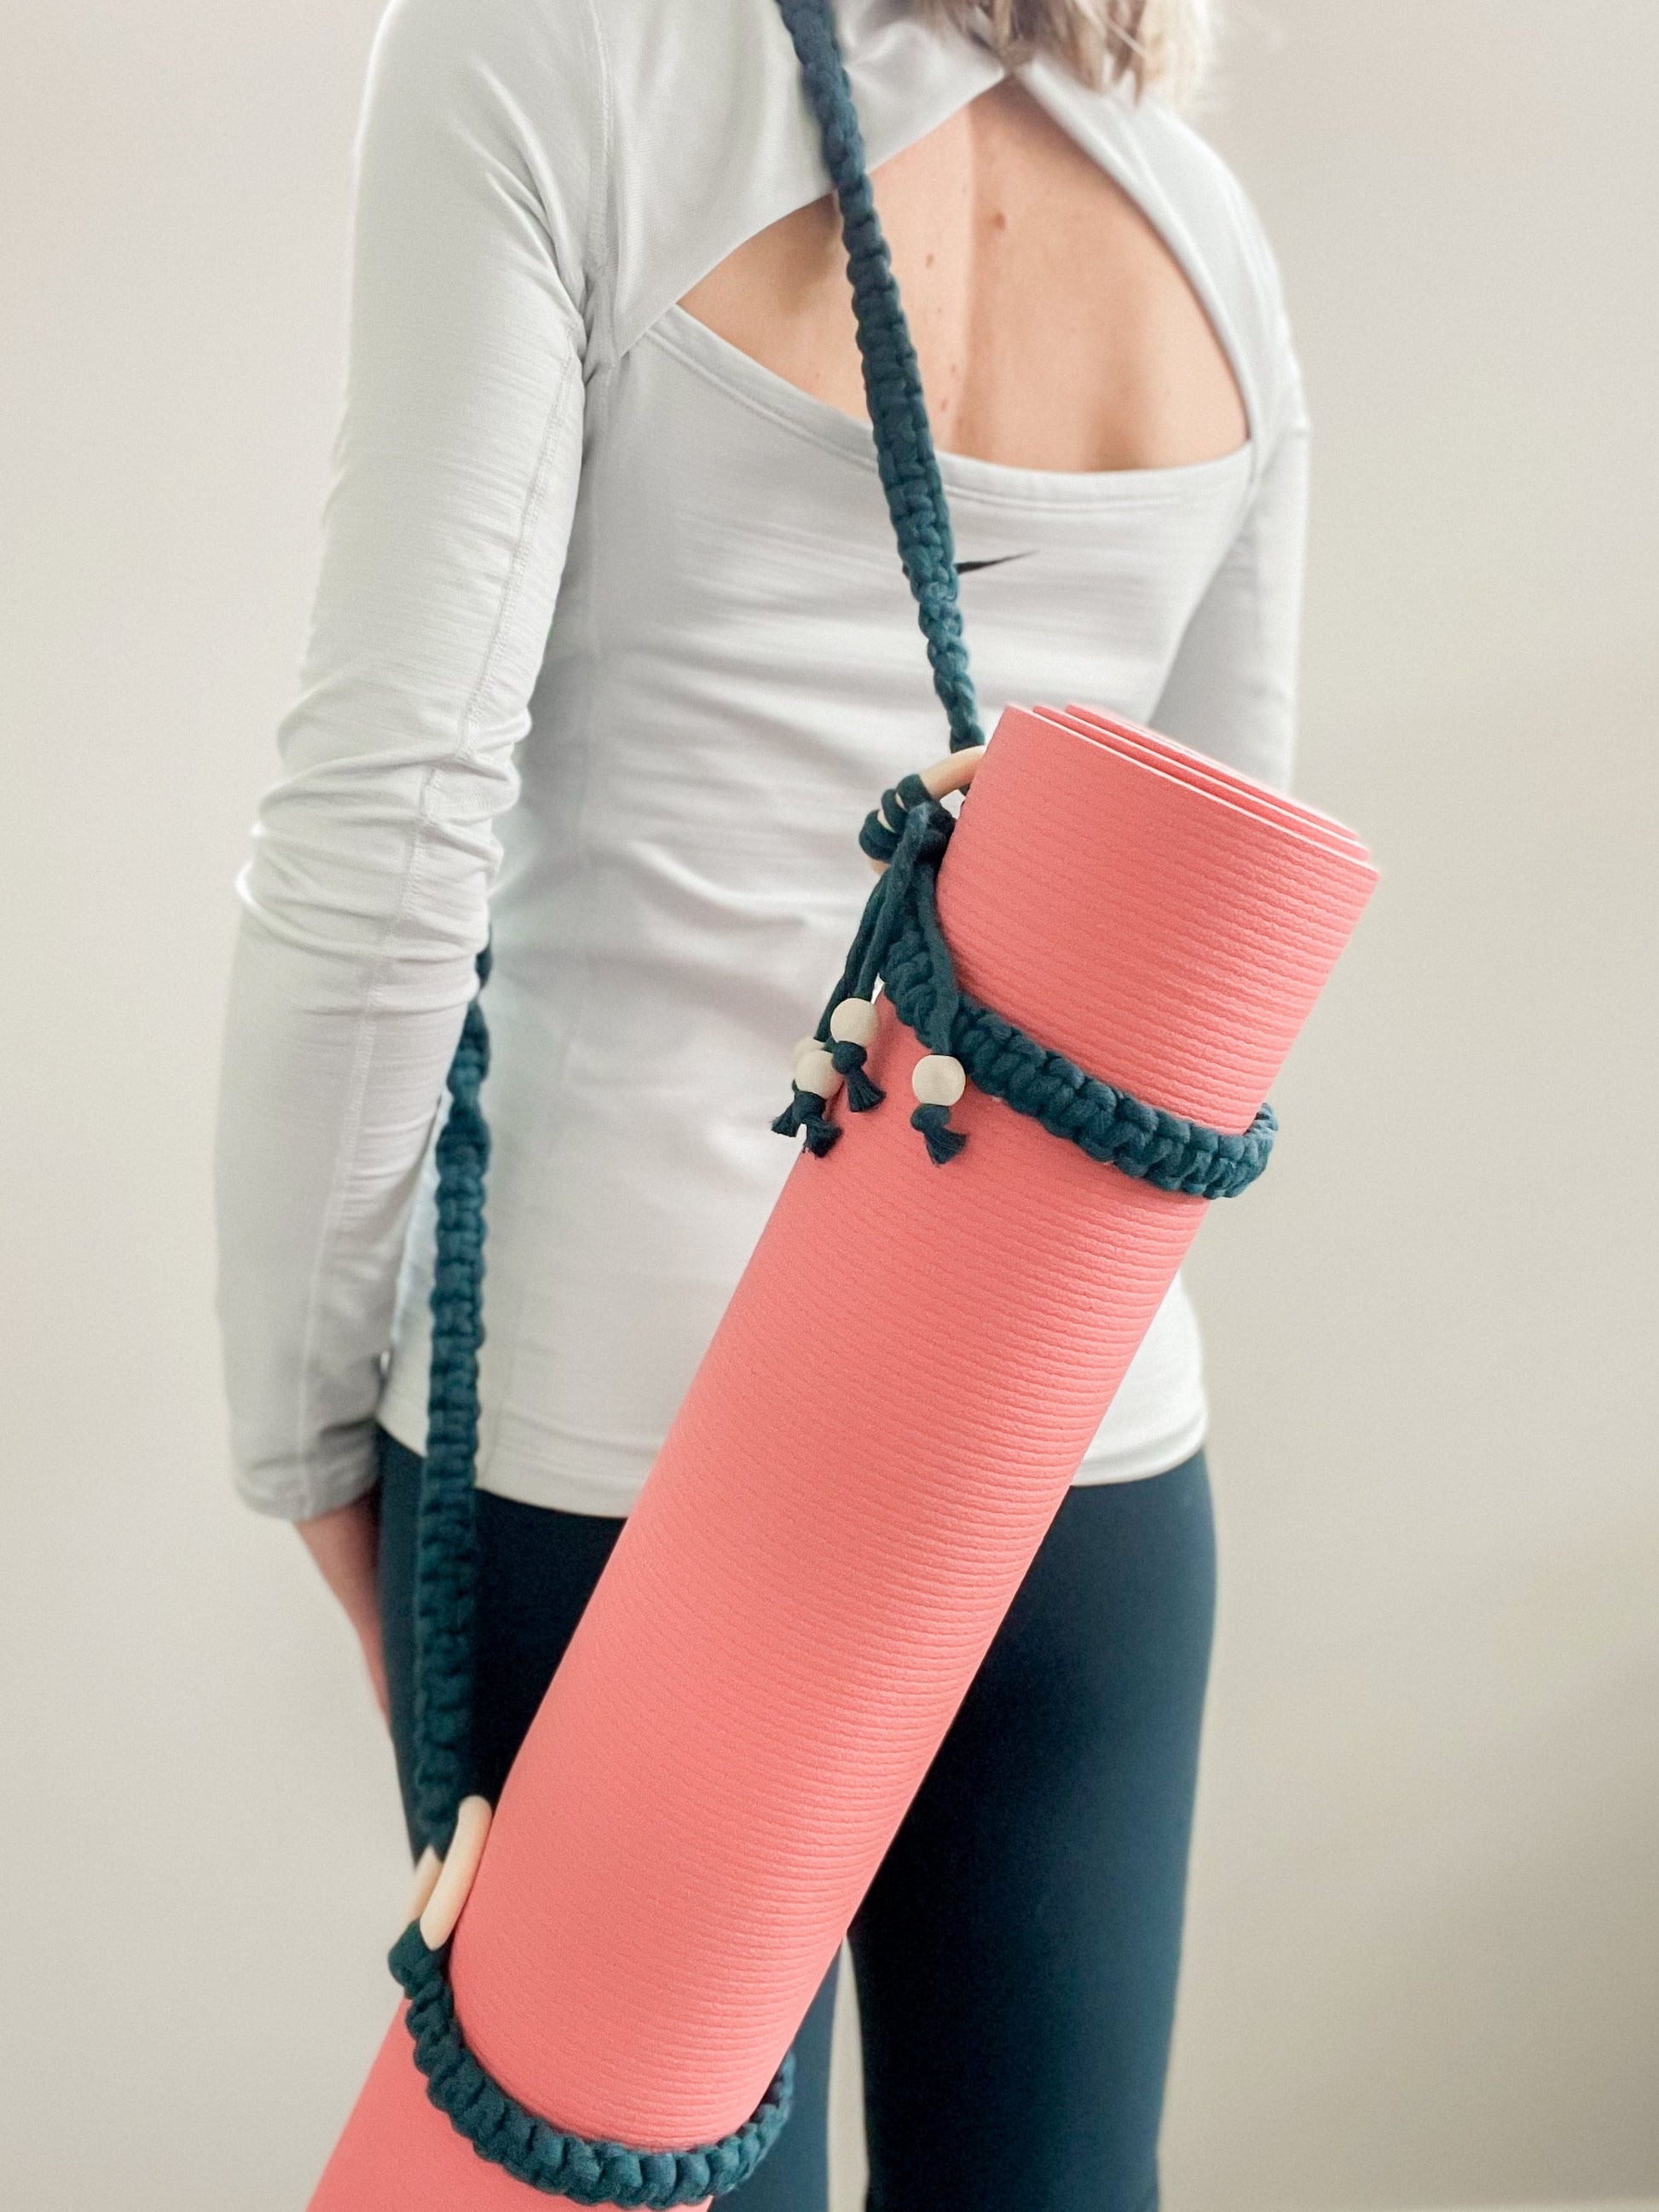 Macrame Yoga Strap, Carrying Strap for Yoga Mat, Shoulder Strap